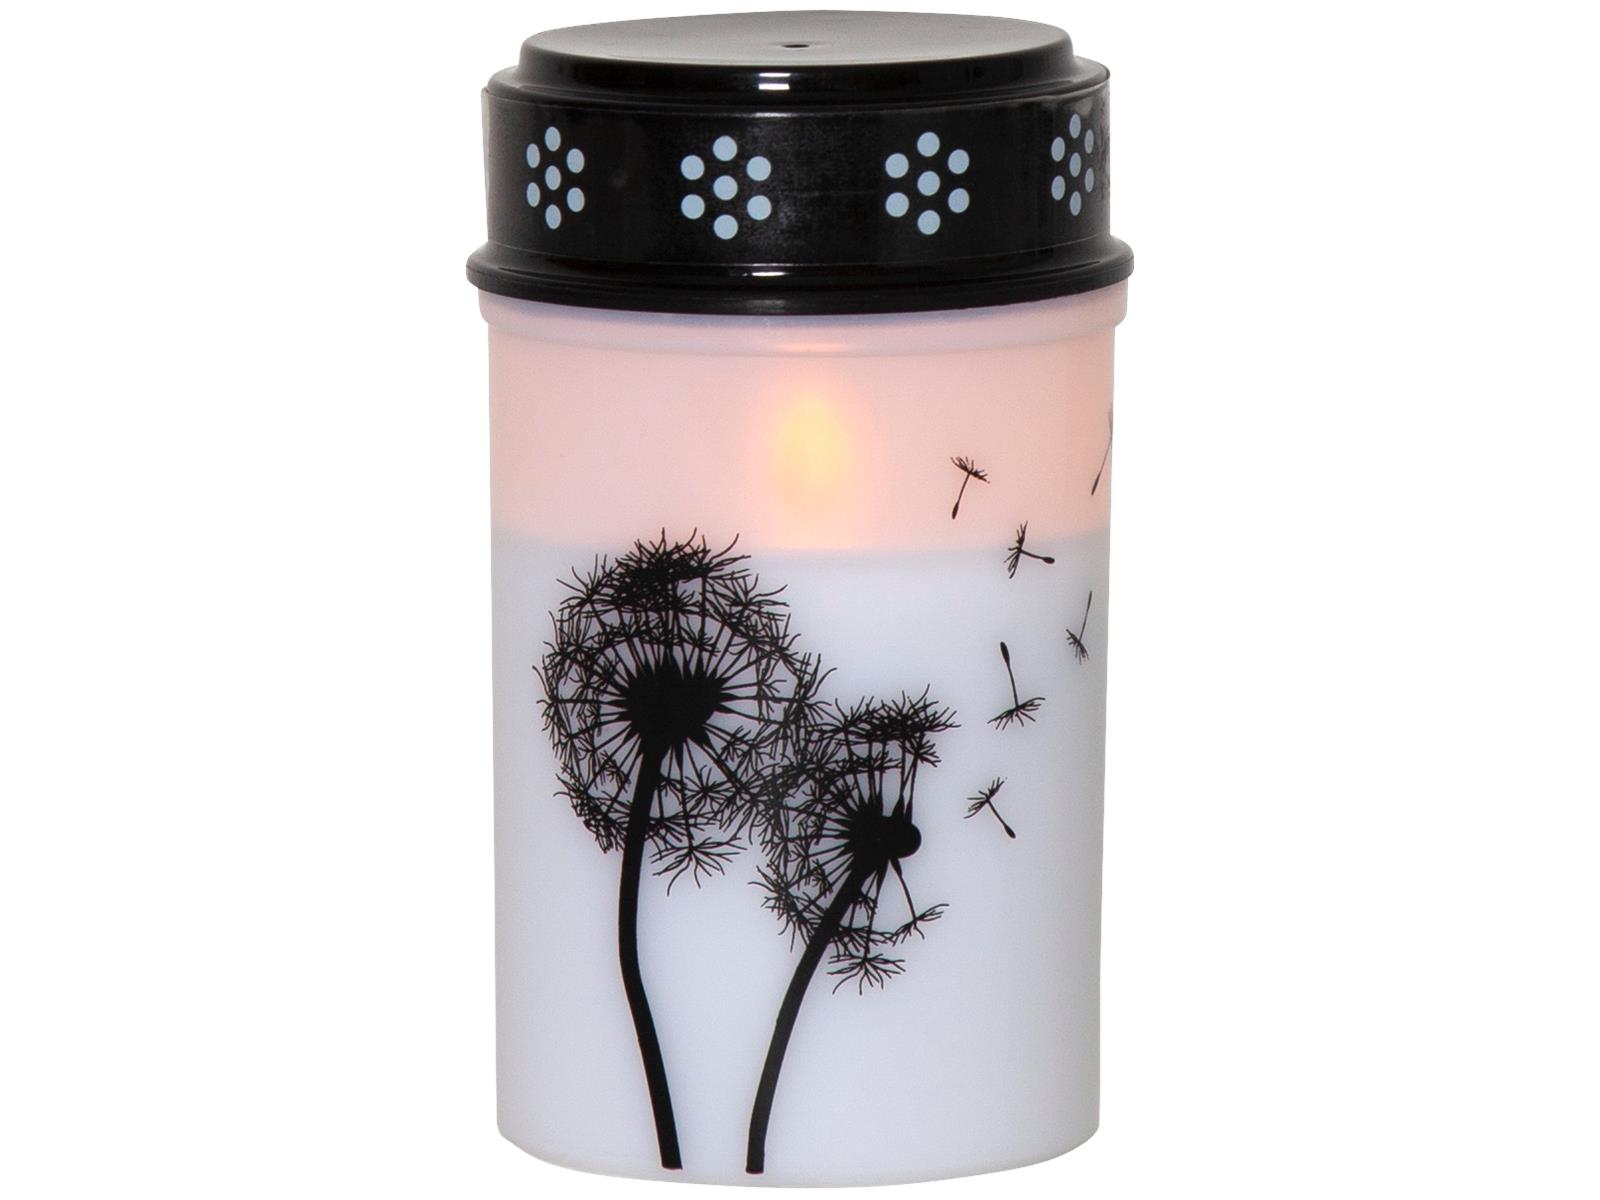 LED-Grablicht ''Dandelion'', weiß mit Pusteblumenmotiv, warmweiß, 12x7cm, outdoor